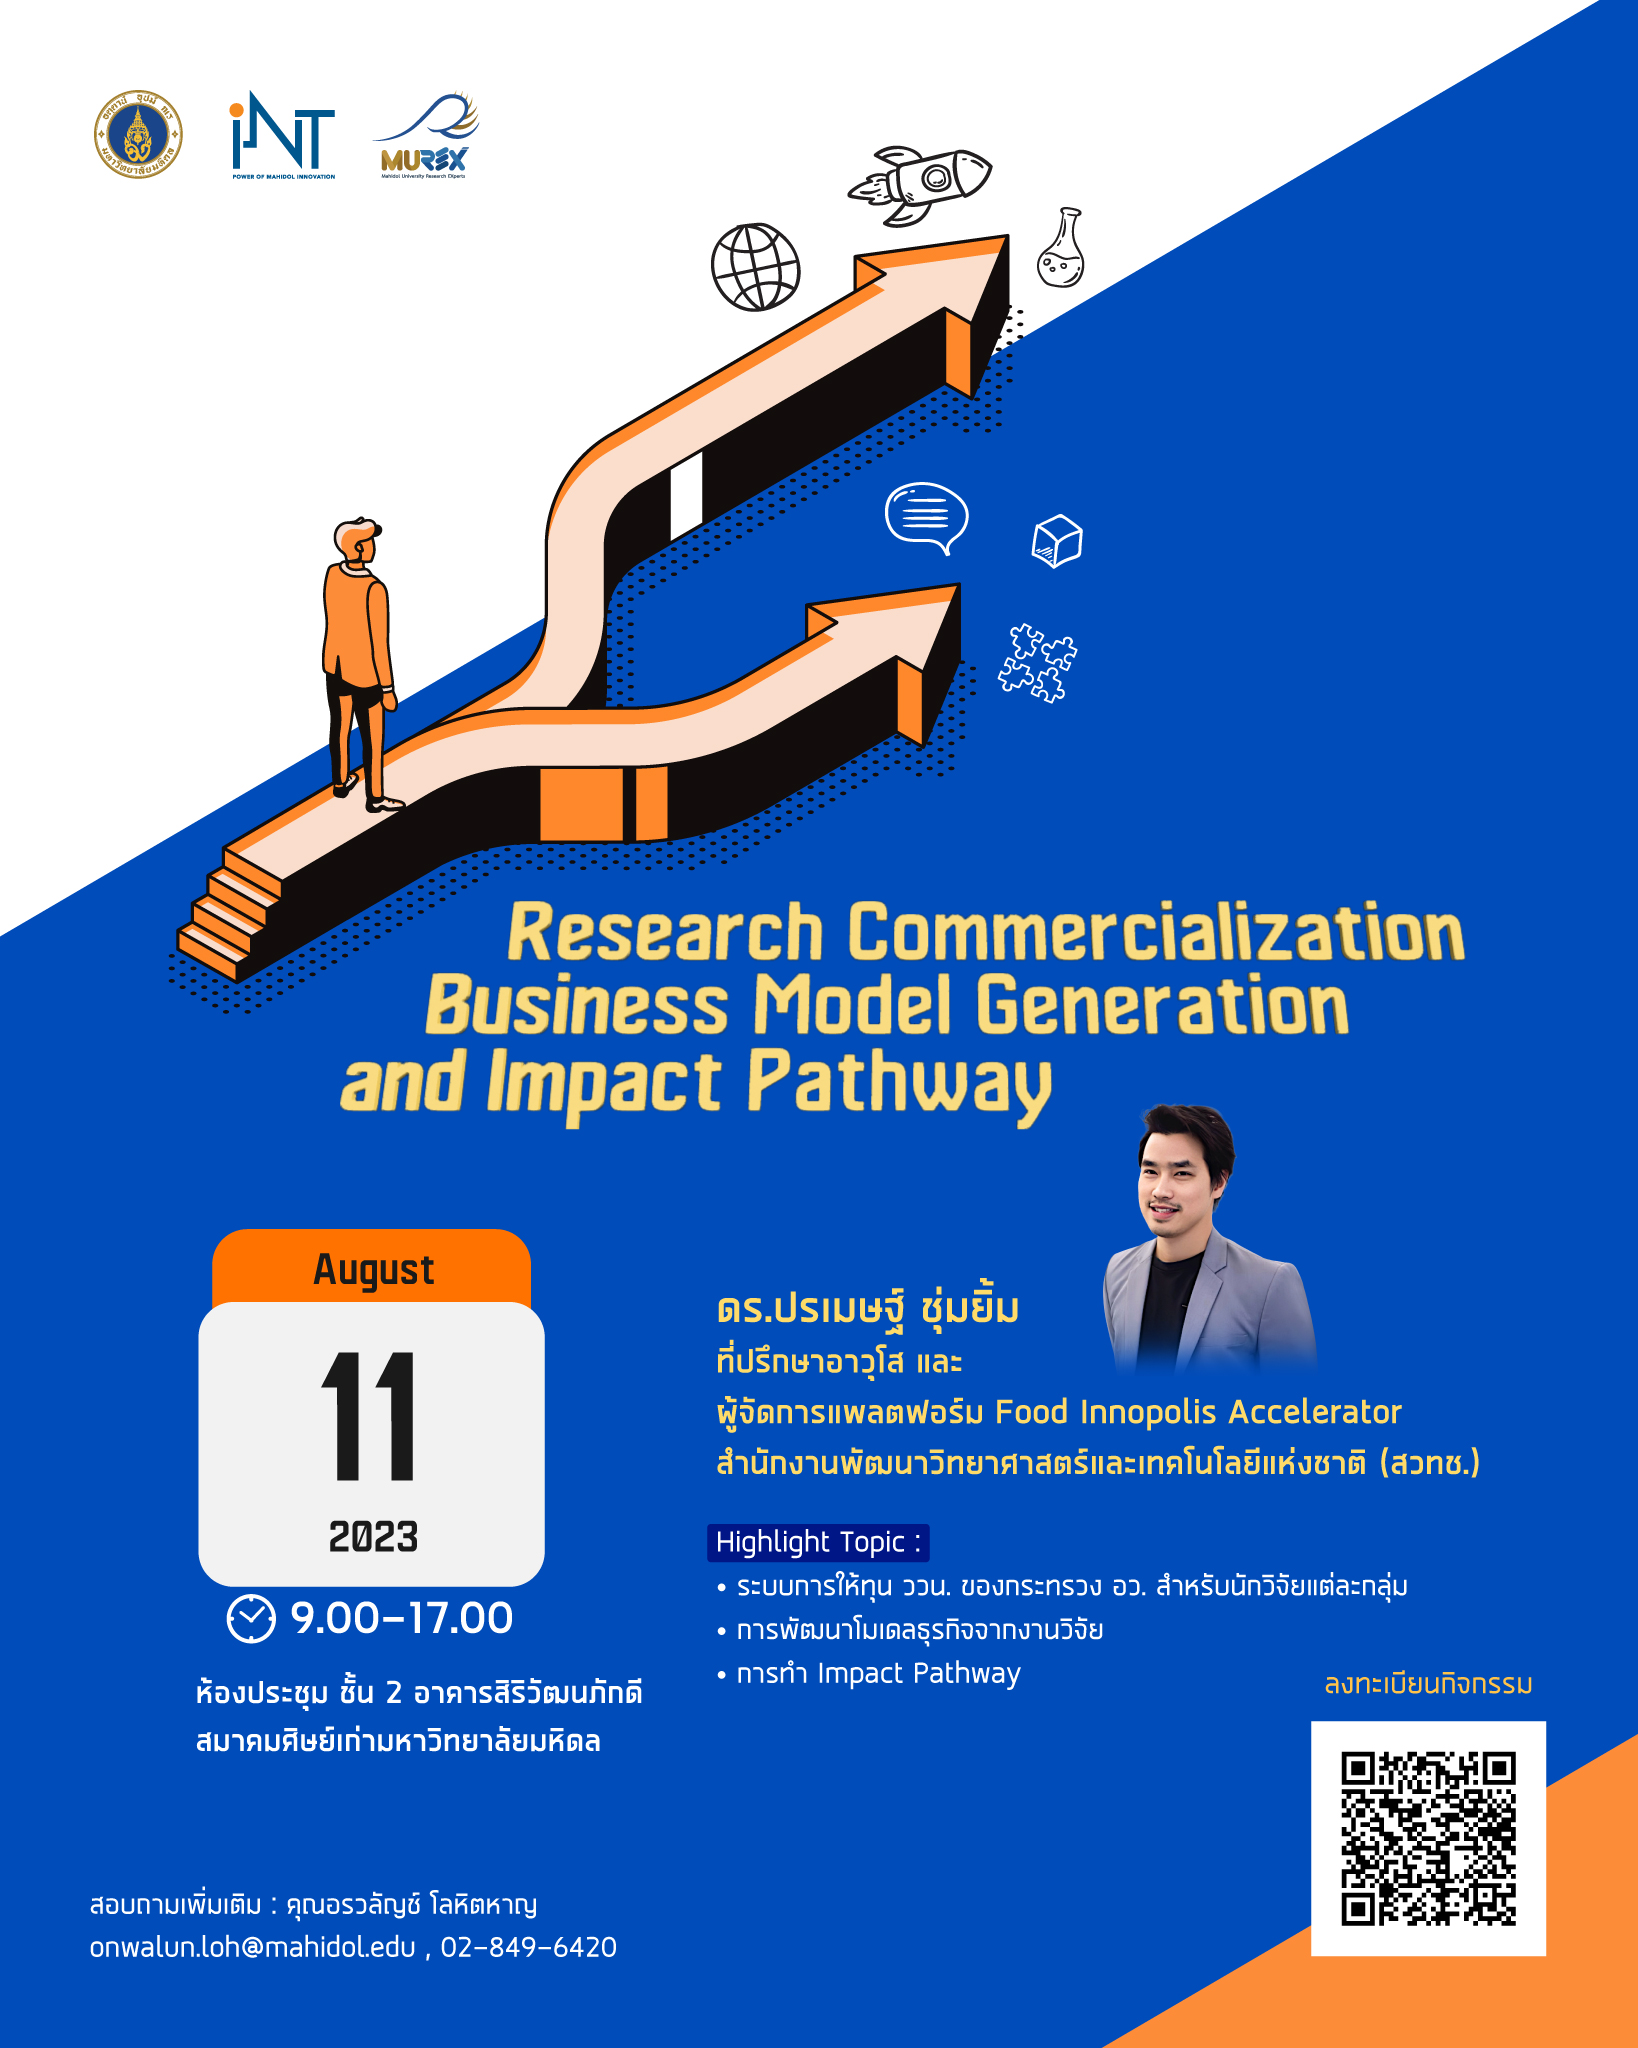 สถาบันบริหารจัดการเทคโนโลยีและนวัตกรรม (iNT) ร่วมกับ กองบริหารงานวิจัย ขอเชิญชวนอาจารย์ นักวิจัย บุคลากร ม.มหิดล เข้าร่วมกิจกรรม “Research Commercialization Business Model Generation and Impact Pathway” พบกับวิทยากรผู้เชี่ยวชาญ ดร.ปรเมษฐ์ ซุ่มยิ้ม ที่ปรึกษาอาวุโส และผู้จัดการแพลตฟอร์ม Food Innopolis Accelerator สำนักงานพัฒนาวิทยาศาสตร์และเทคโนโลยีแห่งชาติ (สวทช.)